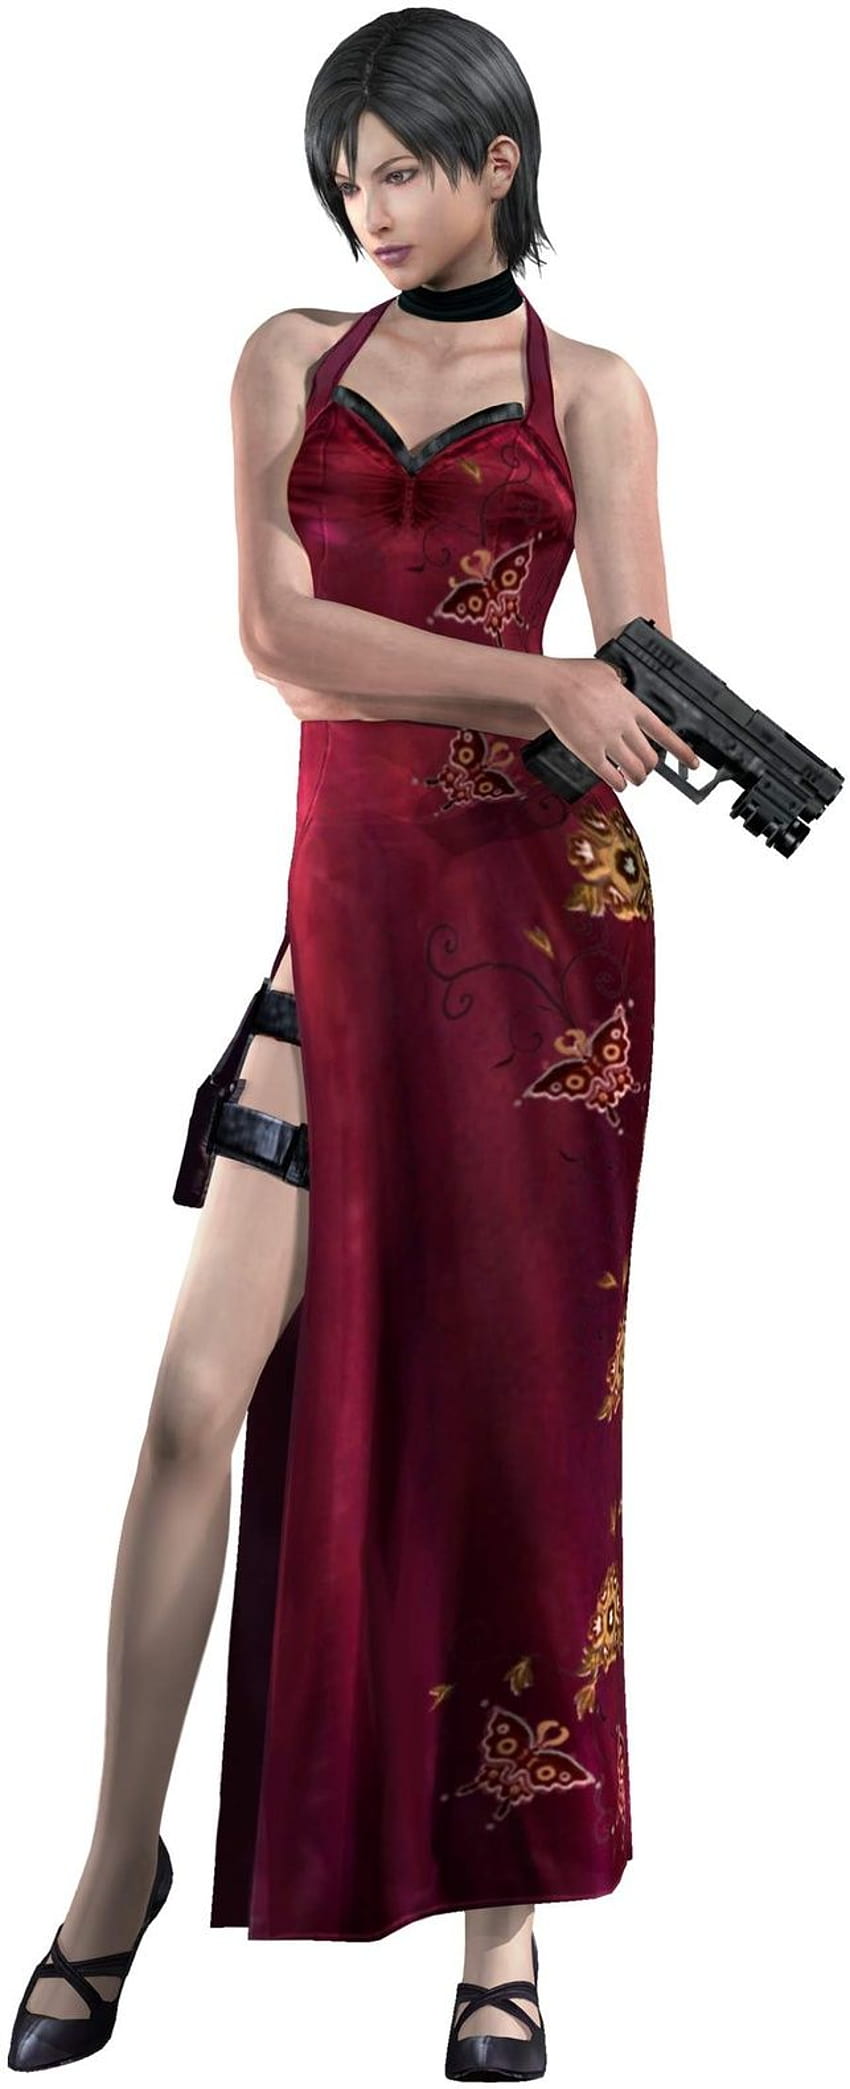 Karakter Video Game Wanita, ada wong resident evil 4 wallpaper ponsel HD